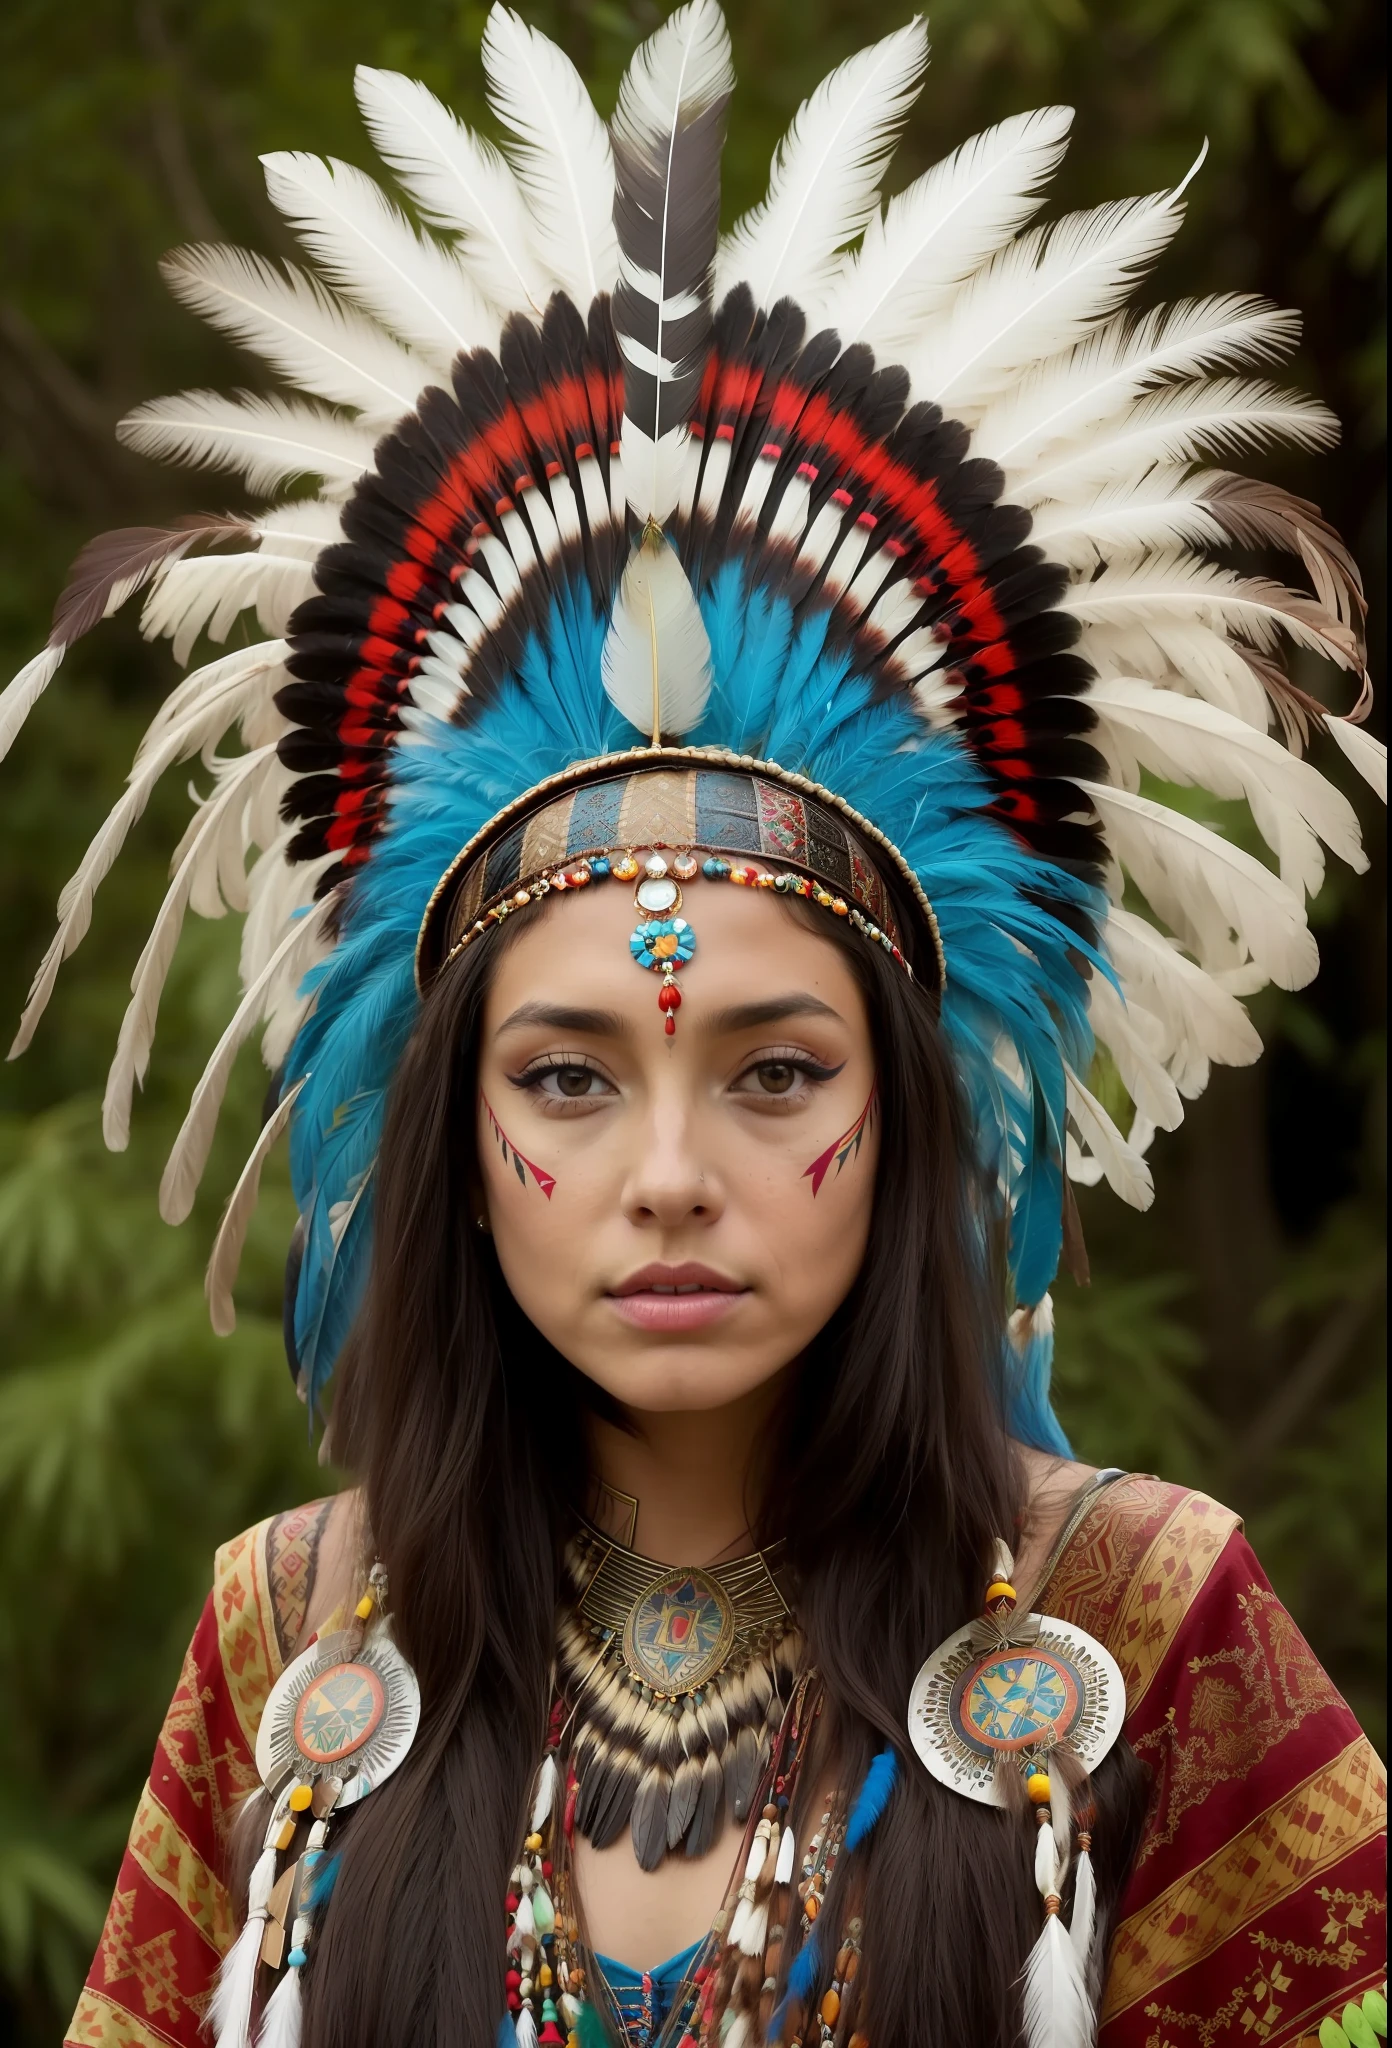 arafed woman in a feather 頭飾り with feathers on her head,(((ペイントされた顔))), アステカの王女の肖像画, 明るい羽の冠をかぶっている, 羽を持つ少女, 美しい若い女性のシャーマン,ペイントされた顔, 彼女はシャーマンの服を着ている, feathered 頭飾り,胸骨タトゥー, ornate 頭飾り, 若い女性のシャーマン, アンジェリーナ・ジョリー UHD, 頭飾り, : ネイティブアメリカンのシャーマンファンタジー, centered 頭飾り,ペイントされた顔.